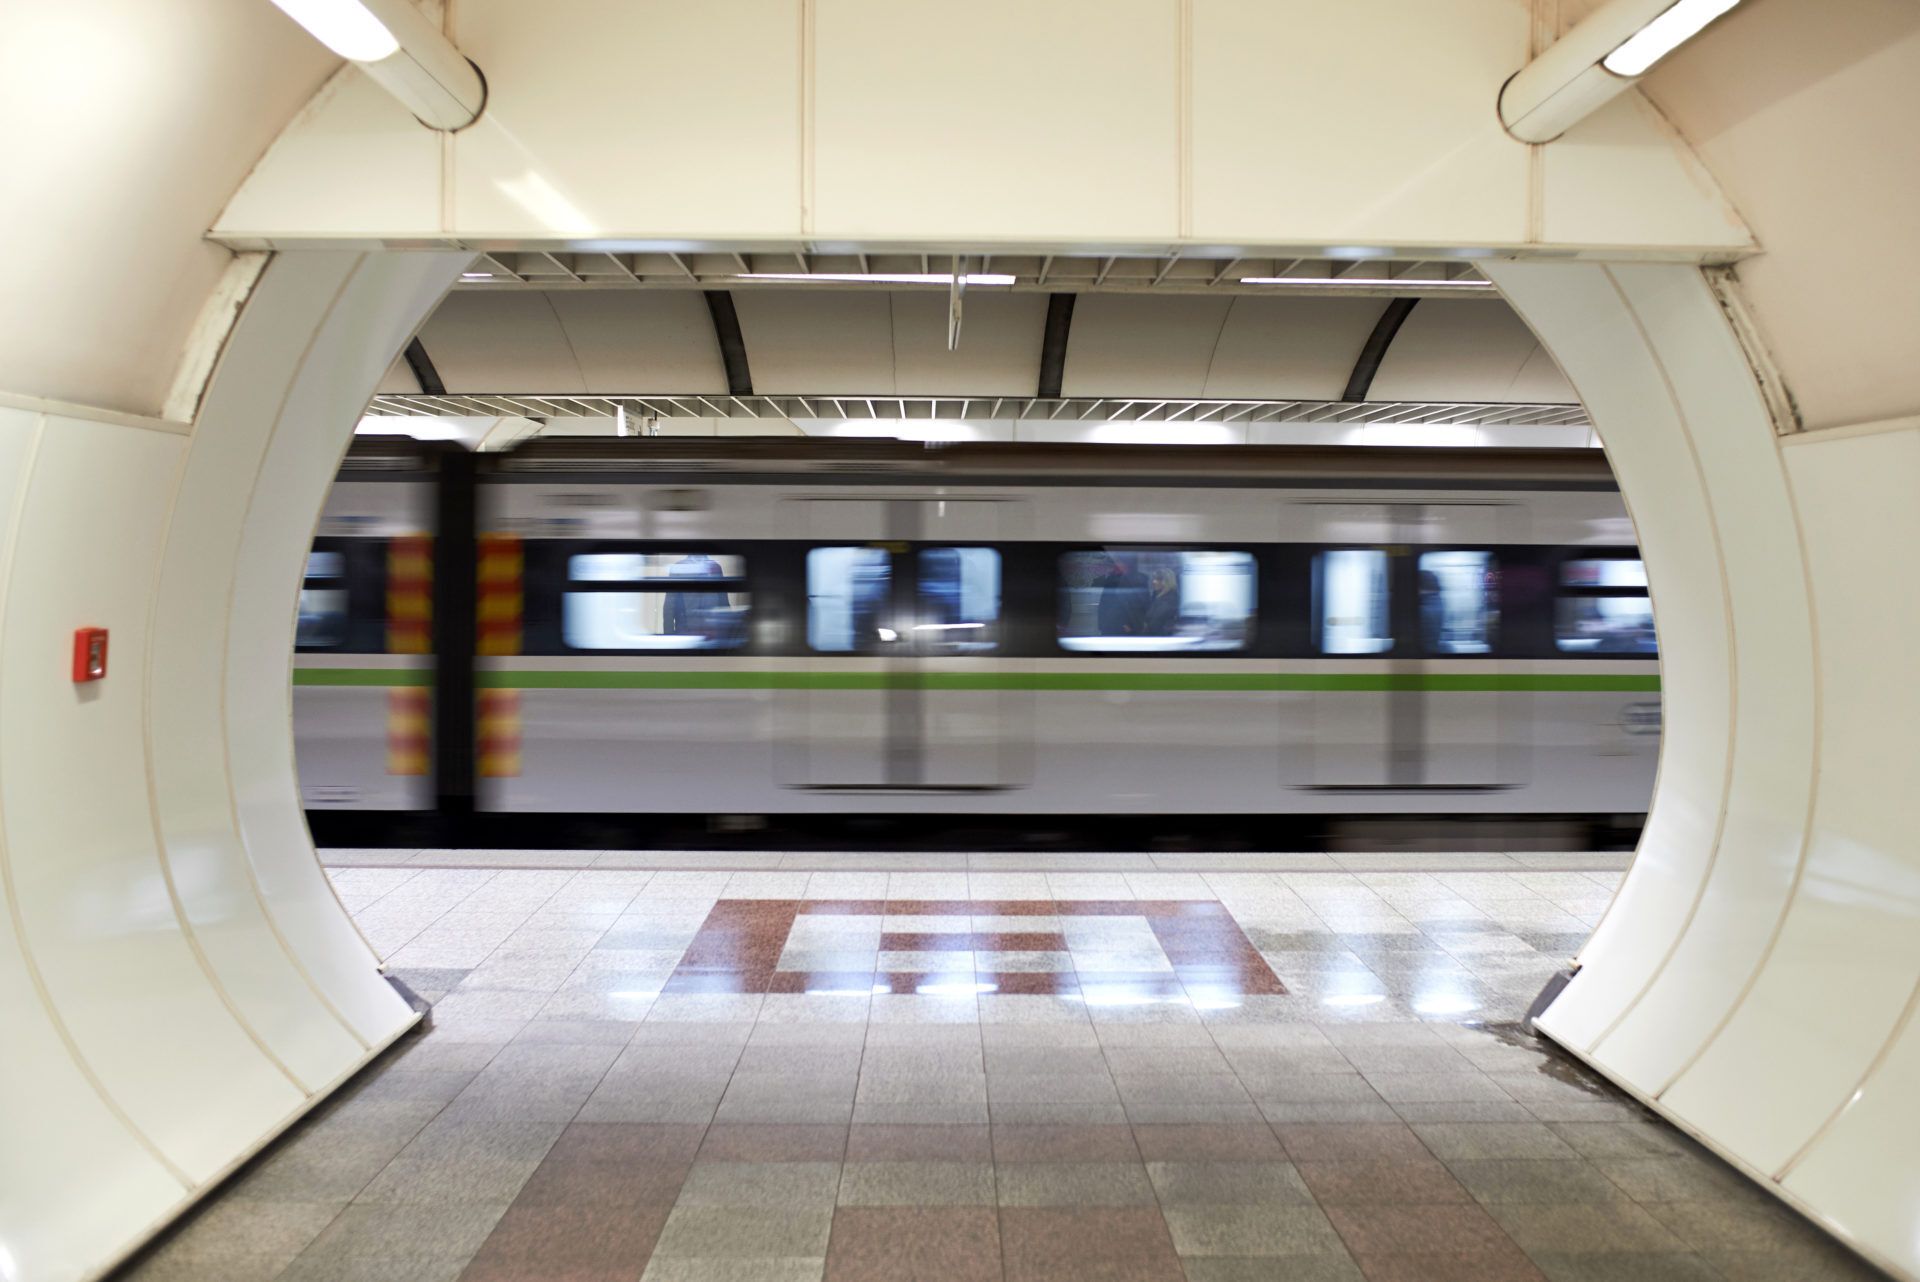 Μετρό: Ίλιον – Αθήνα σε 15 λεπτά μόνο!